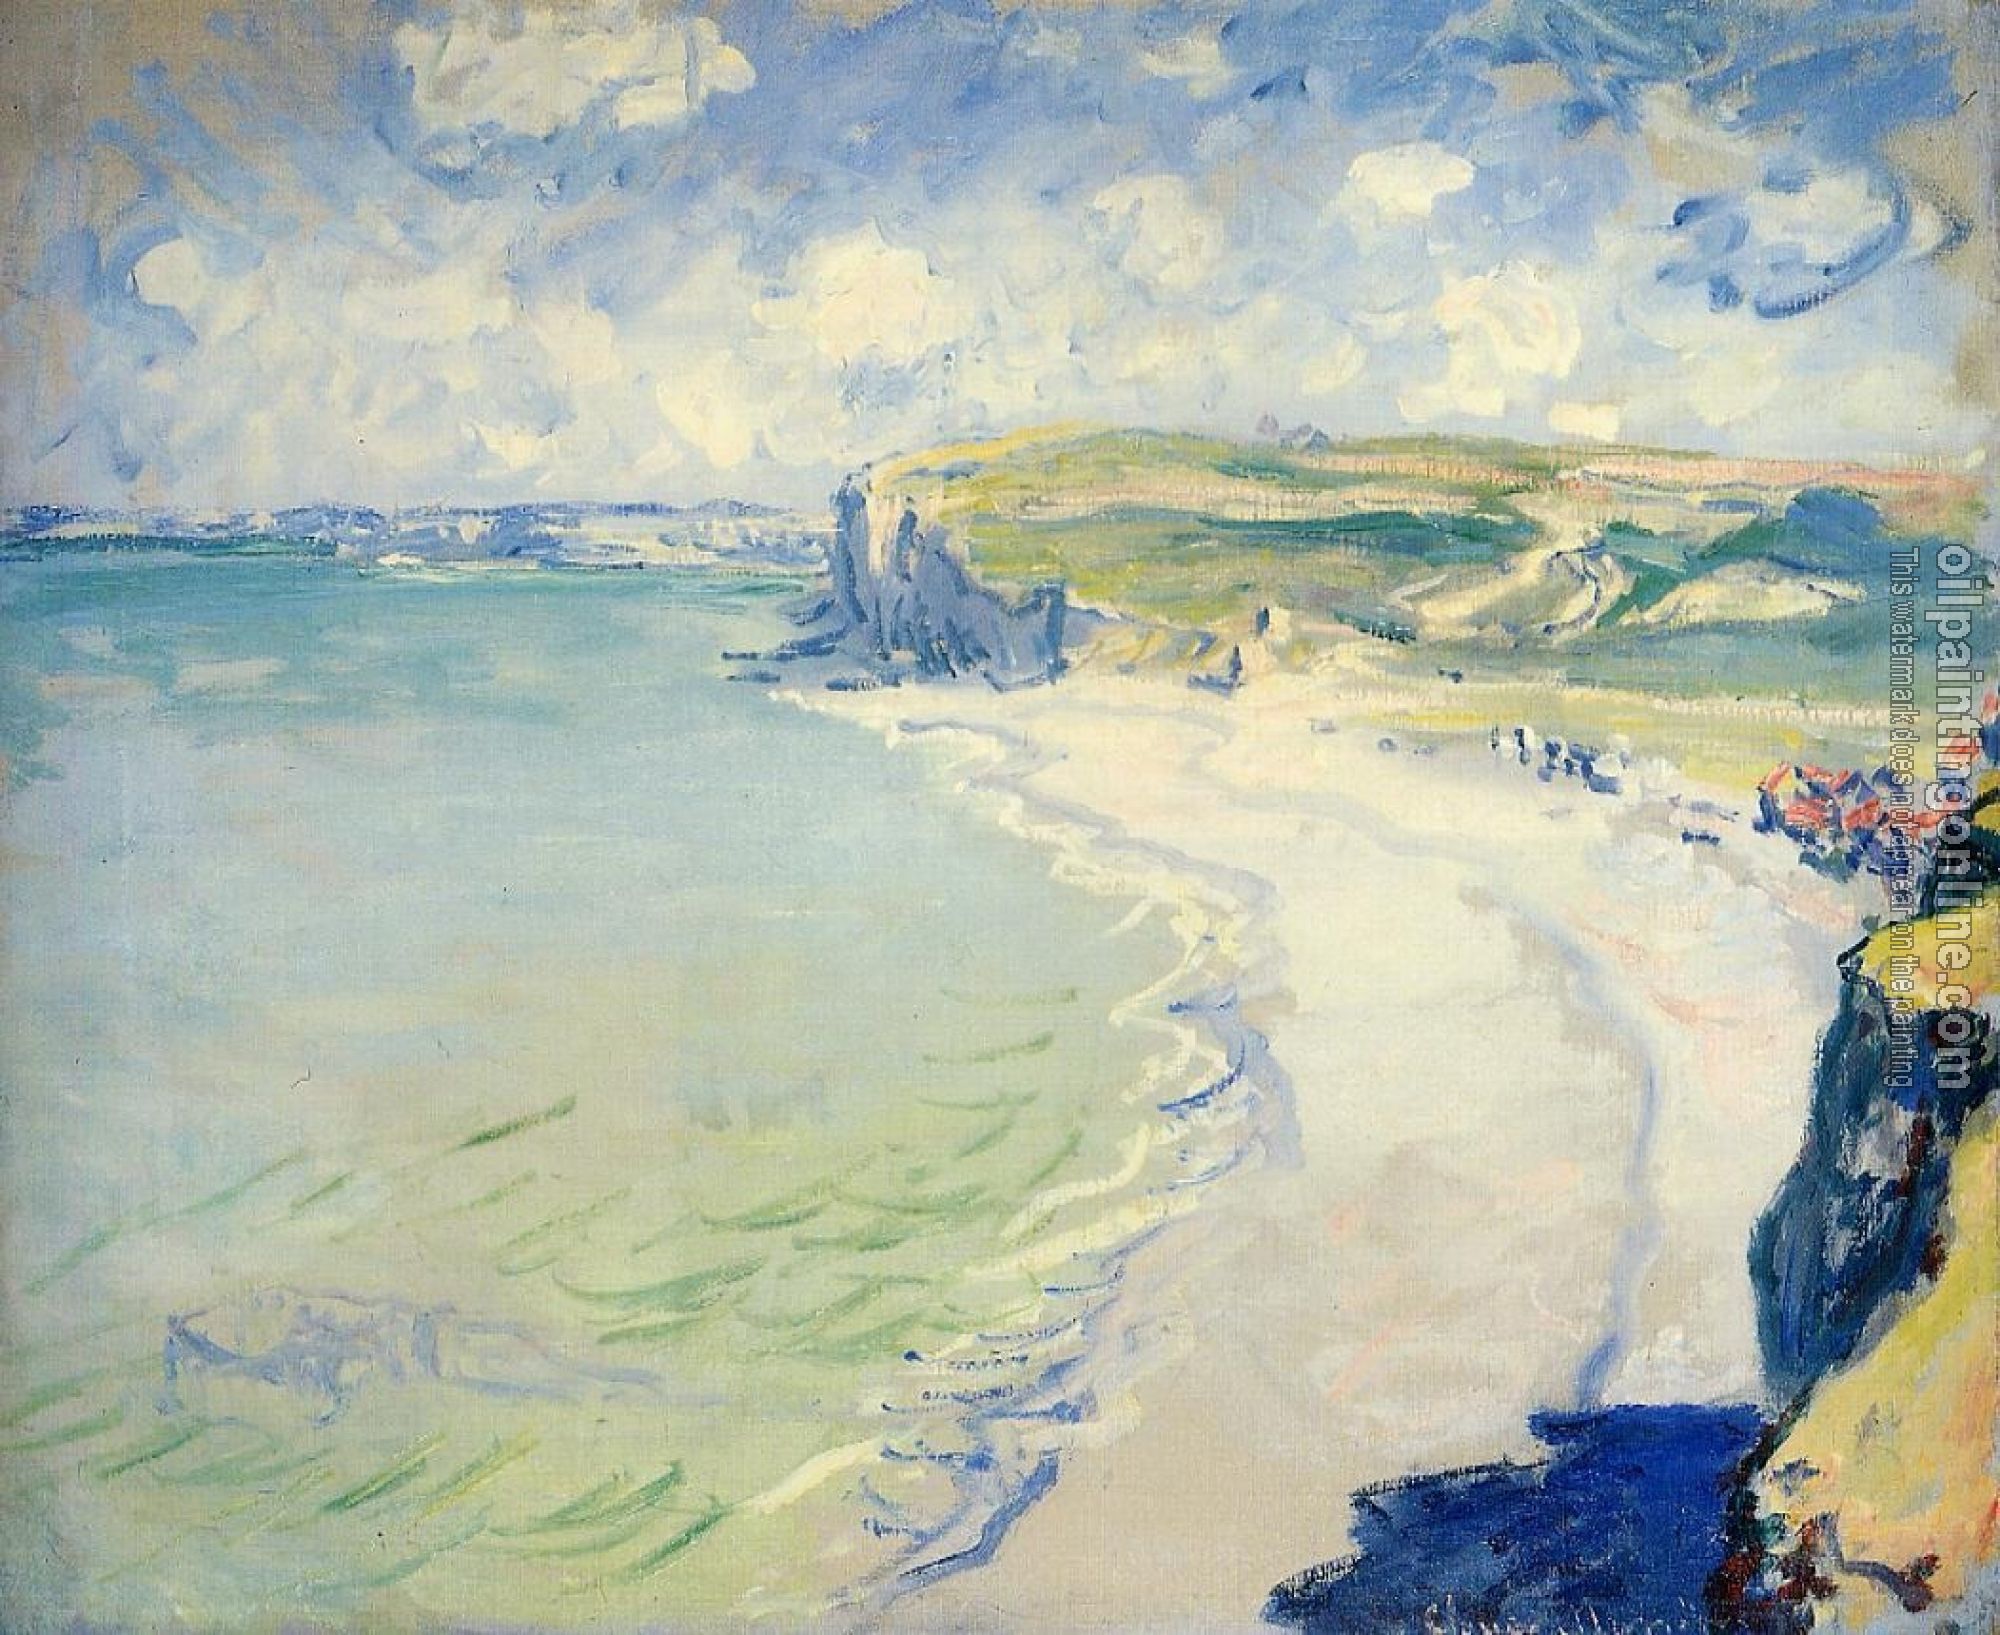 Monet, Claude Oscar - The Beach at Pourville